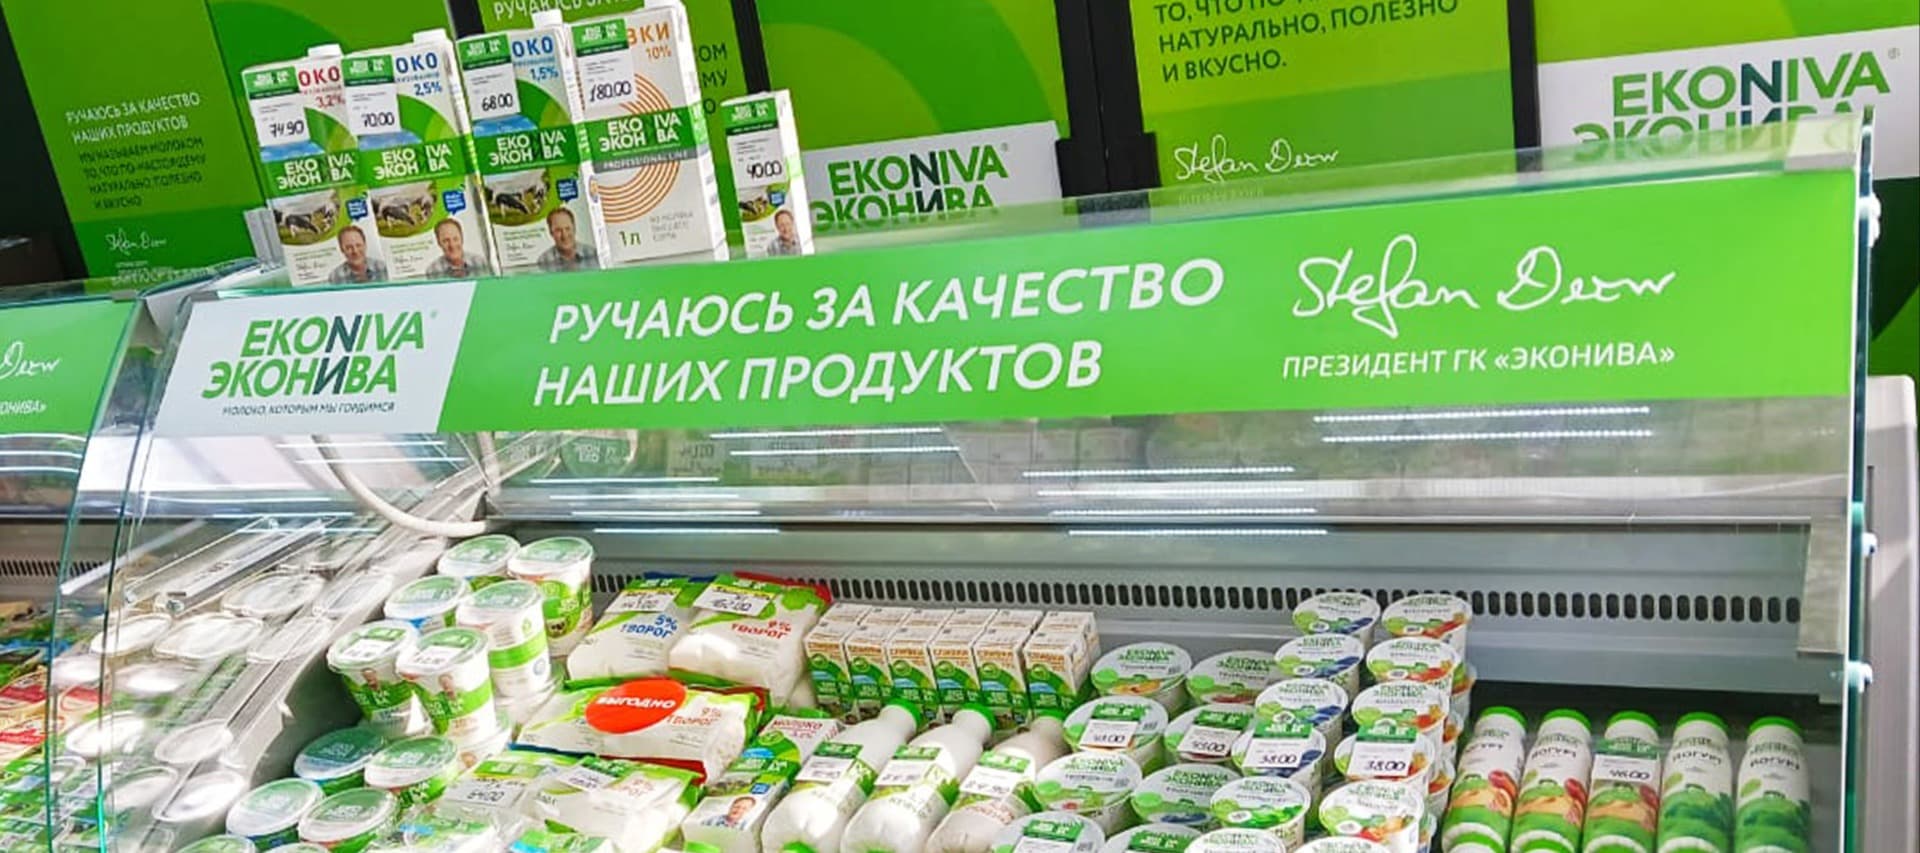 Фото новости: "«Эконива» открыла первый магазин в Республике Башкортостан"